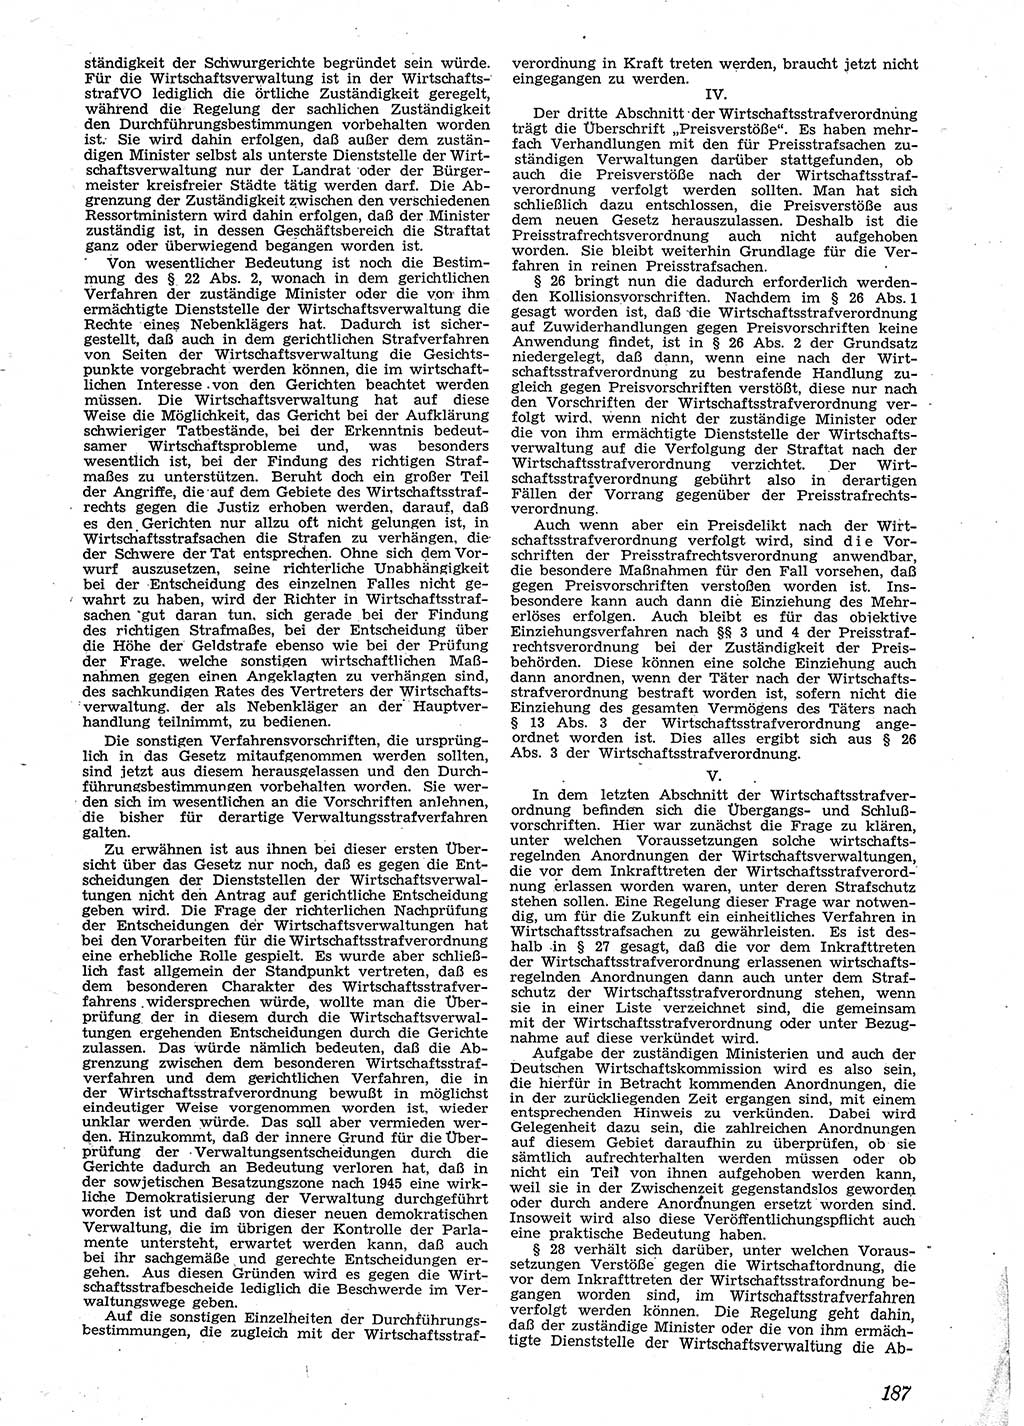 Neue Justiz (NJ), Zeitschrift für Recht und Rechtswissenschaft [Sowjetische Besatzungszone (SBZ) Deutschland], 2. Jahrgang 1948, Seite 187 (NJ SBZ Dtl. 1948, S. 187)